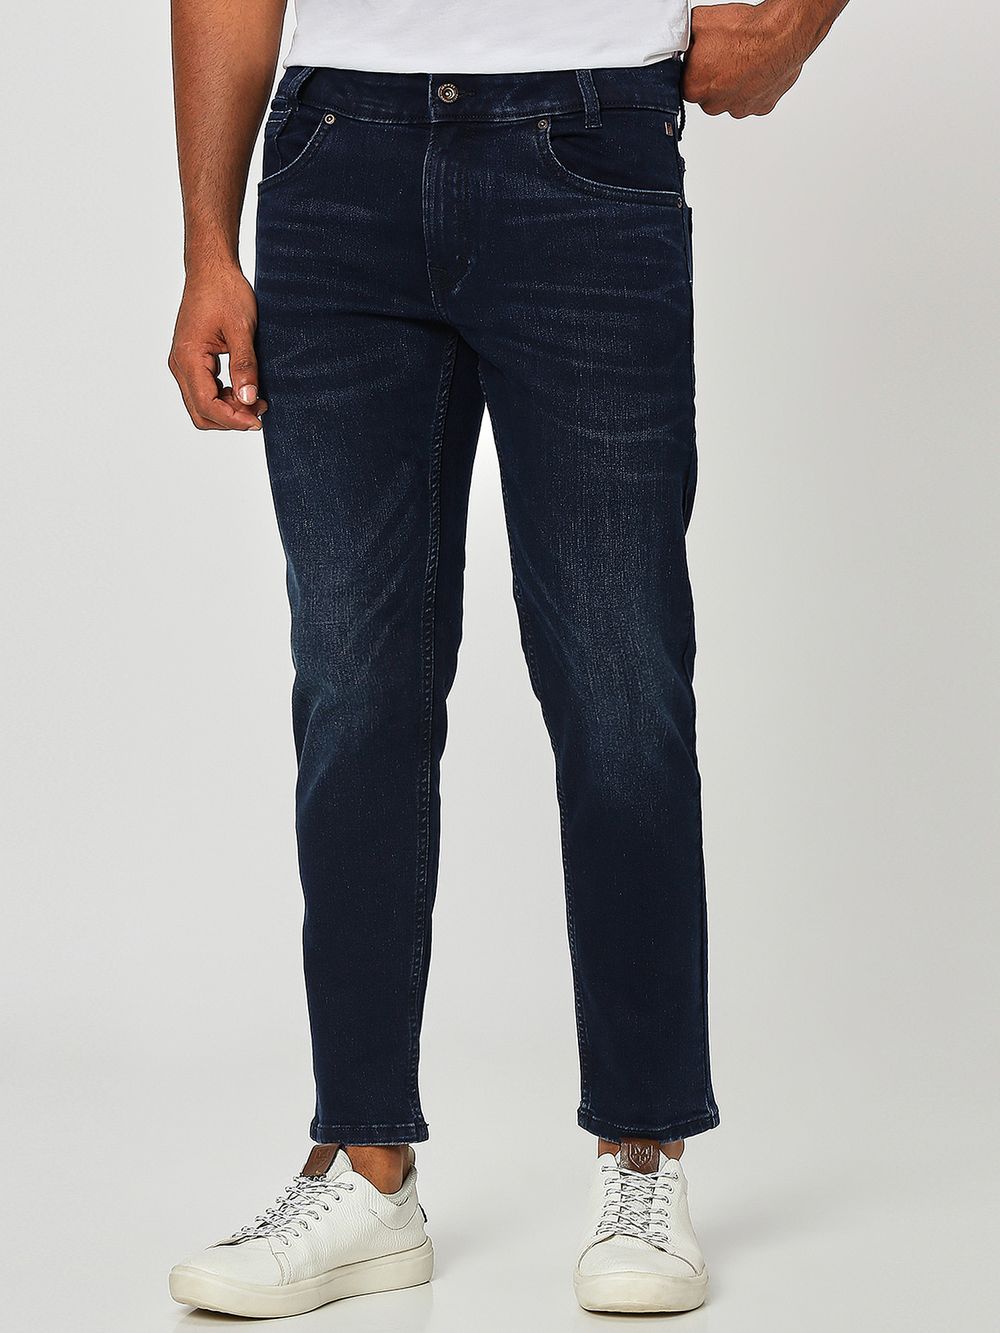 Deep Indigo Blue Ankle Length Originals Stretch Jeans